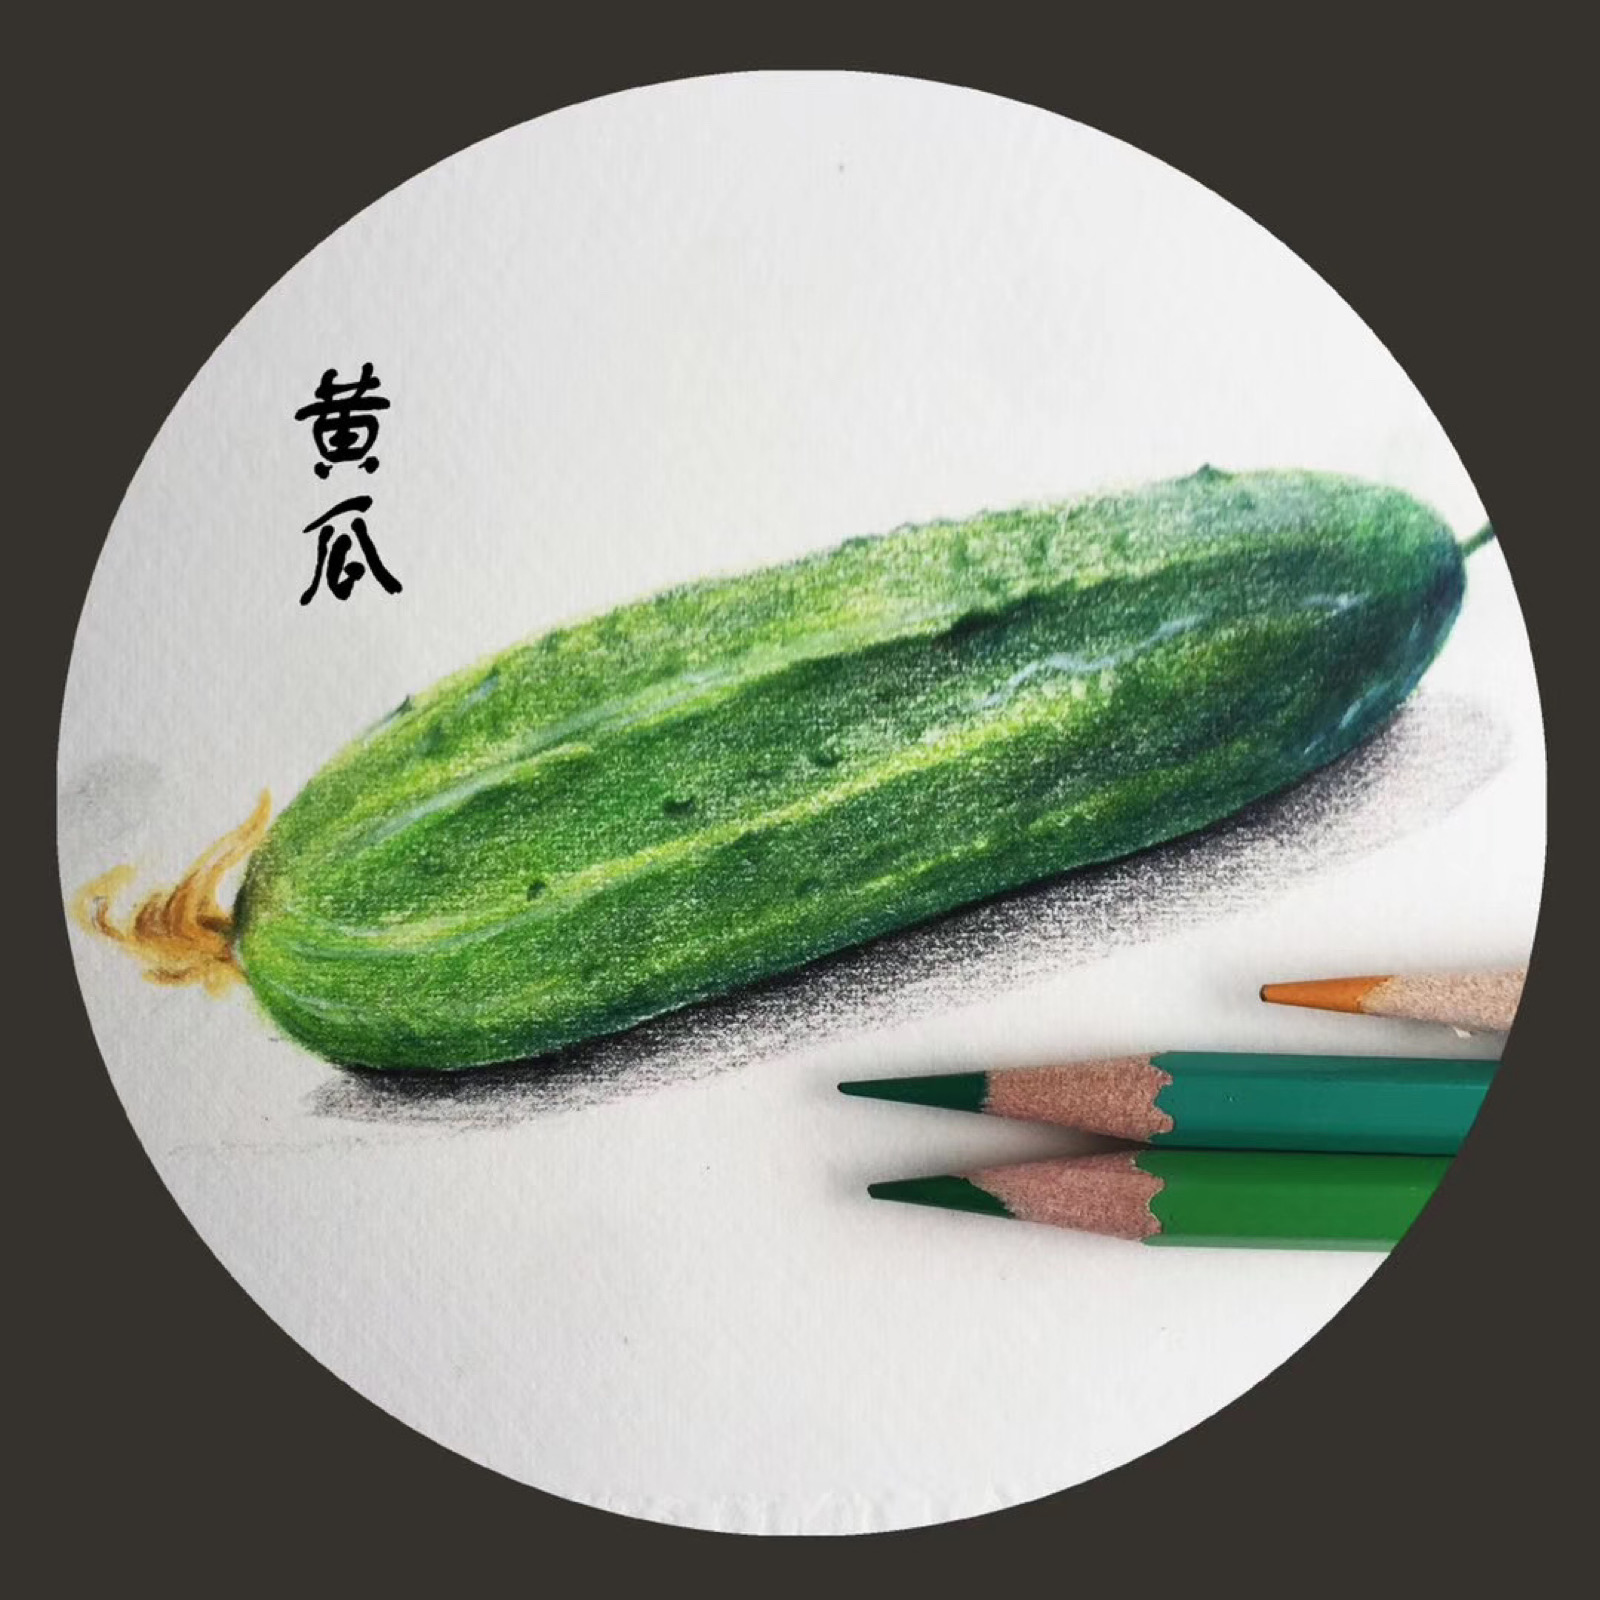 彩铅画蔬菜水果组合图片